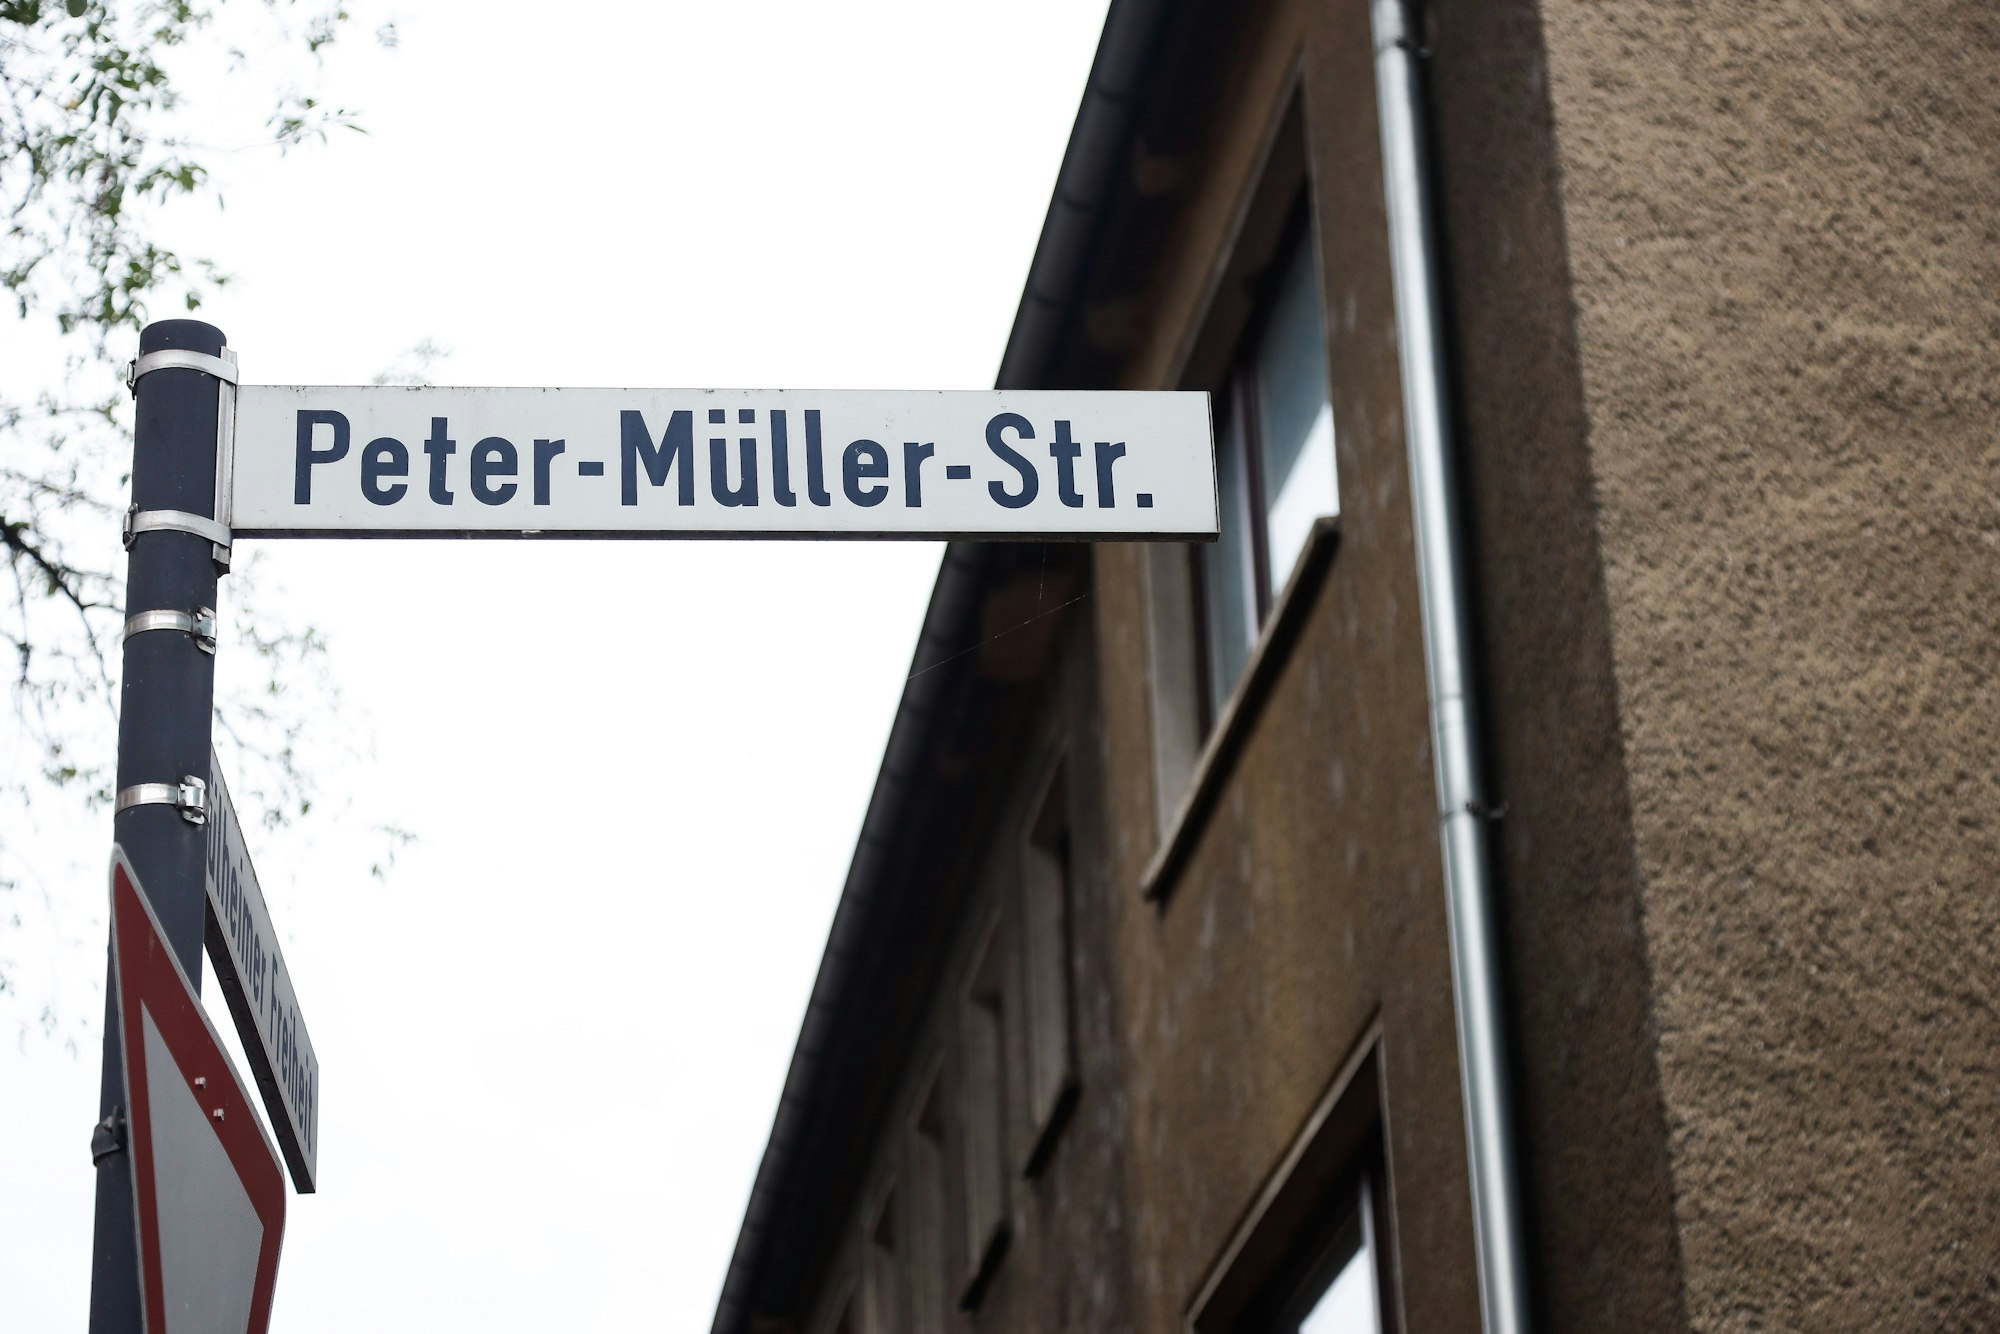 Straßenschild der Peter-Müller-Straße in Köln-Mülheim.